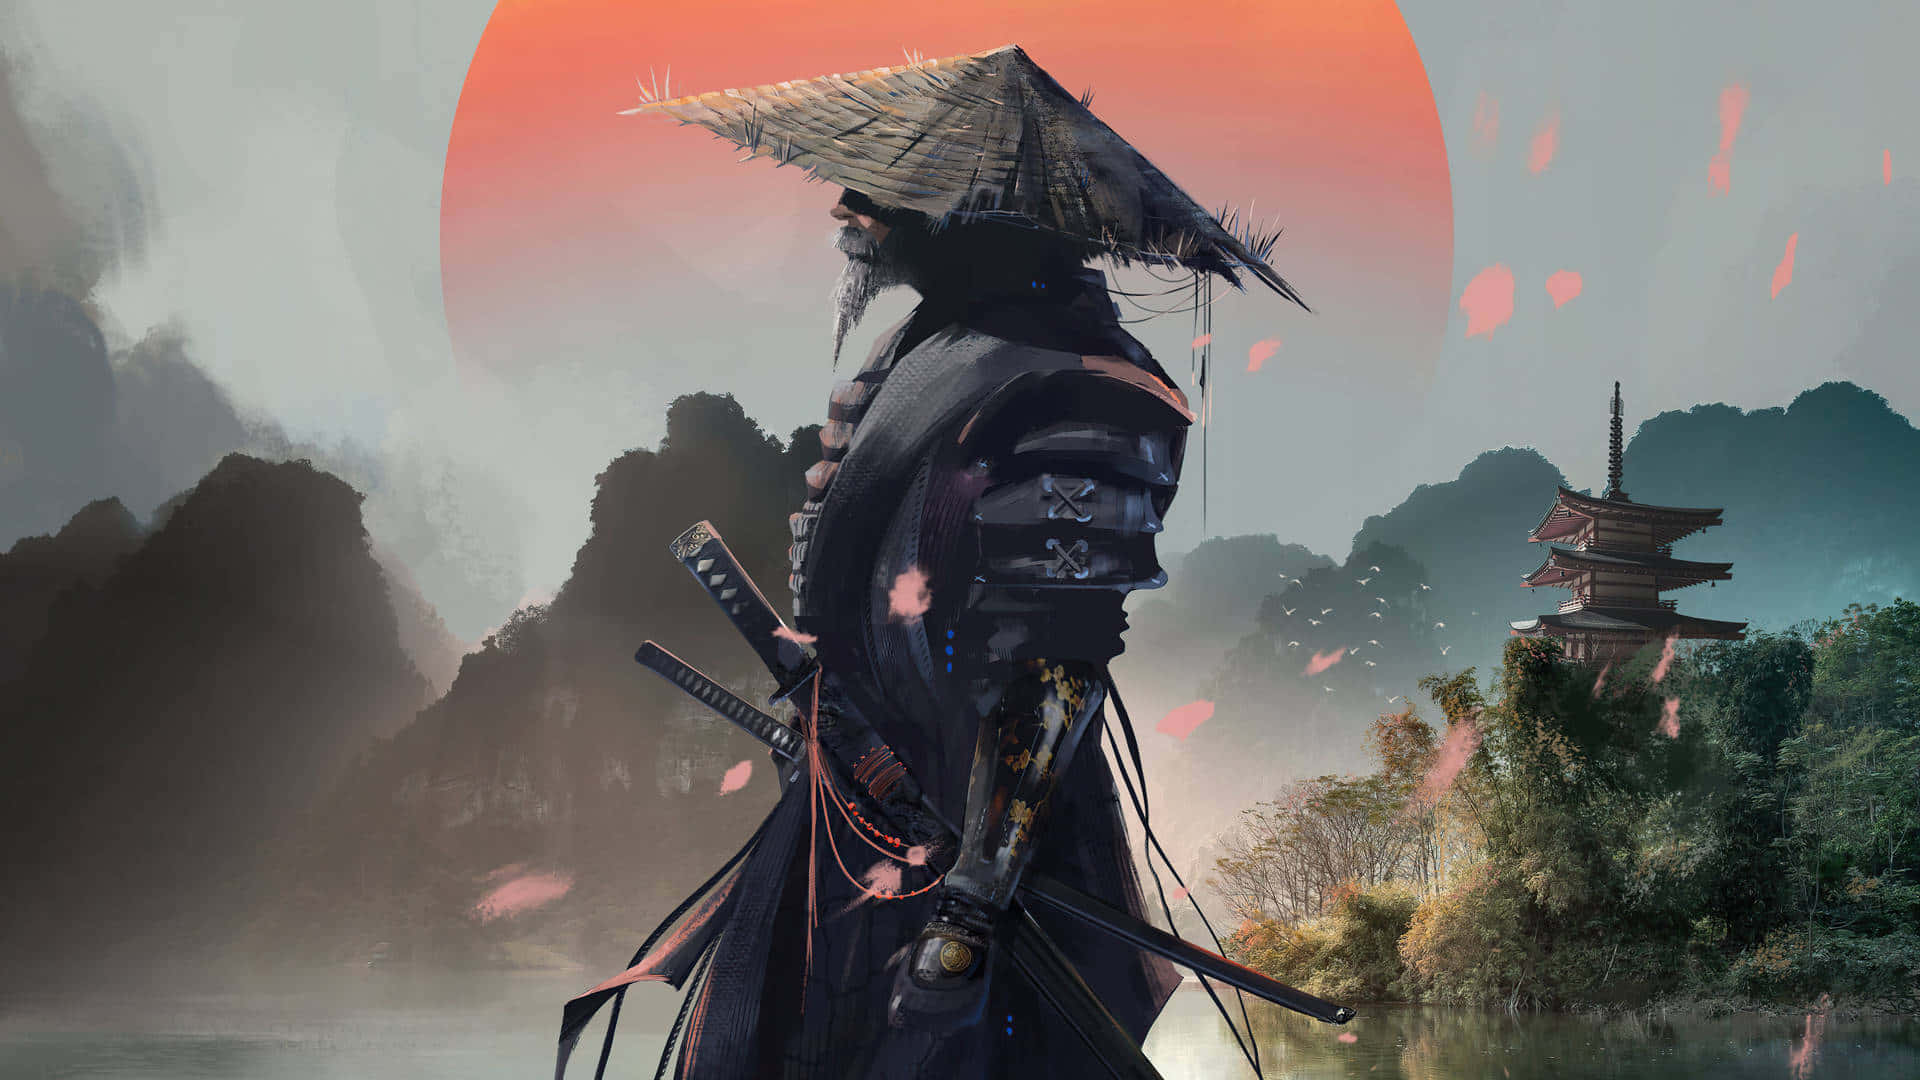 Samurai Background